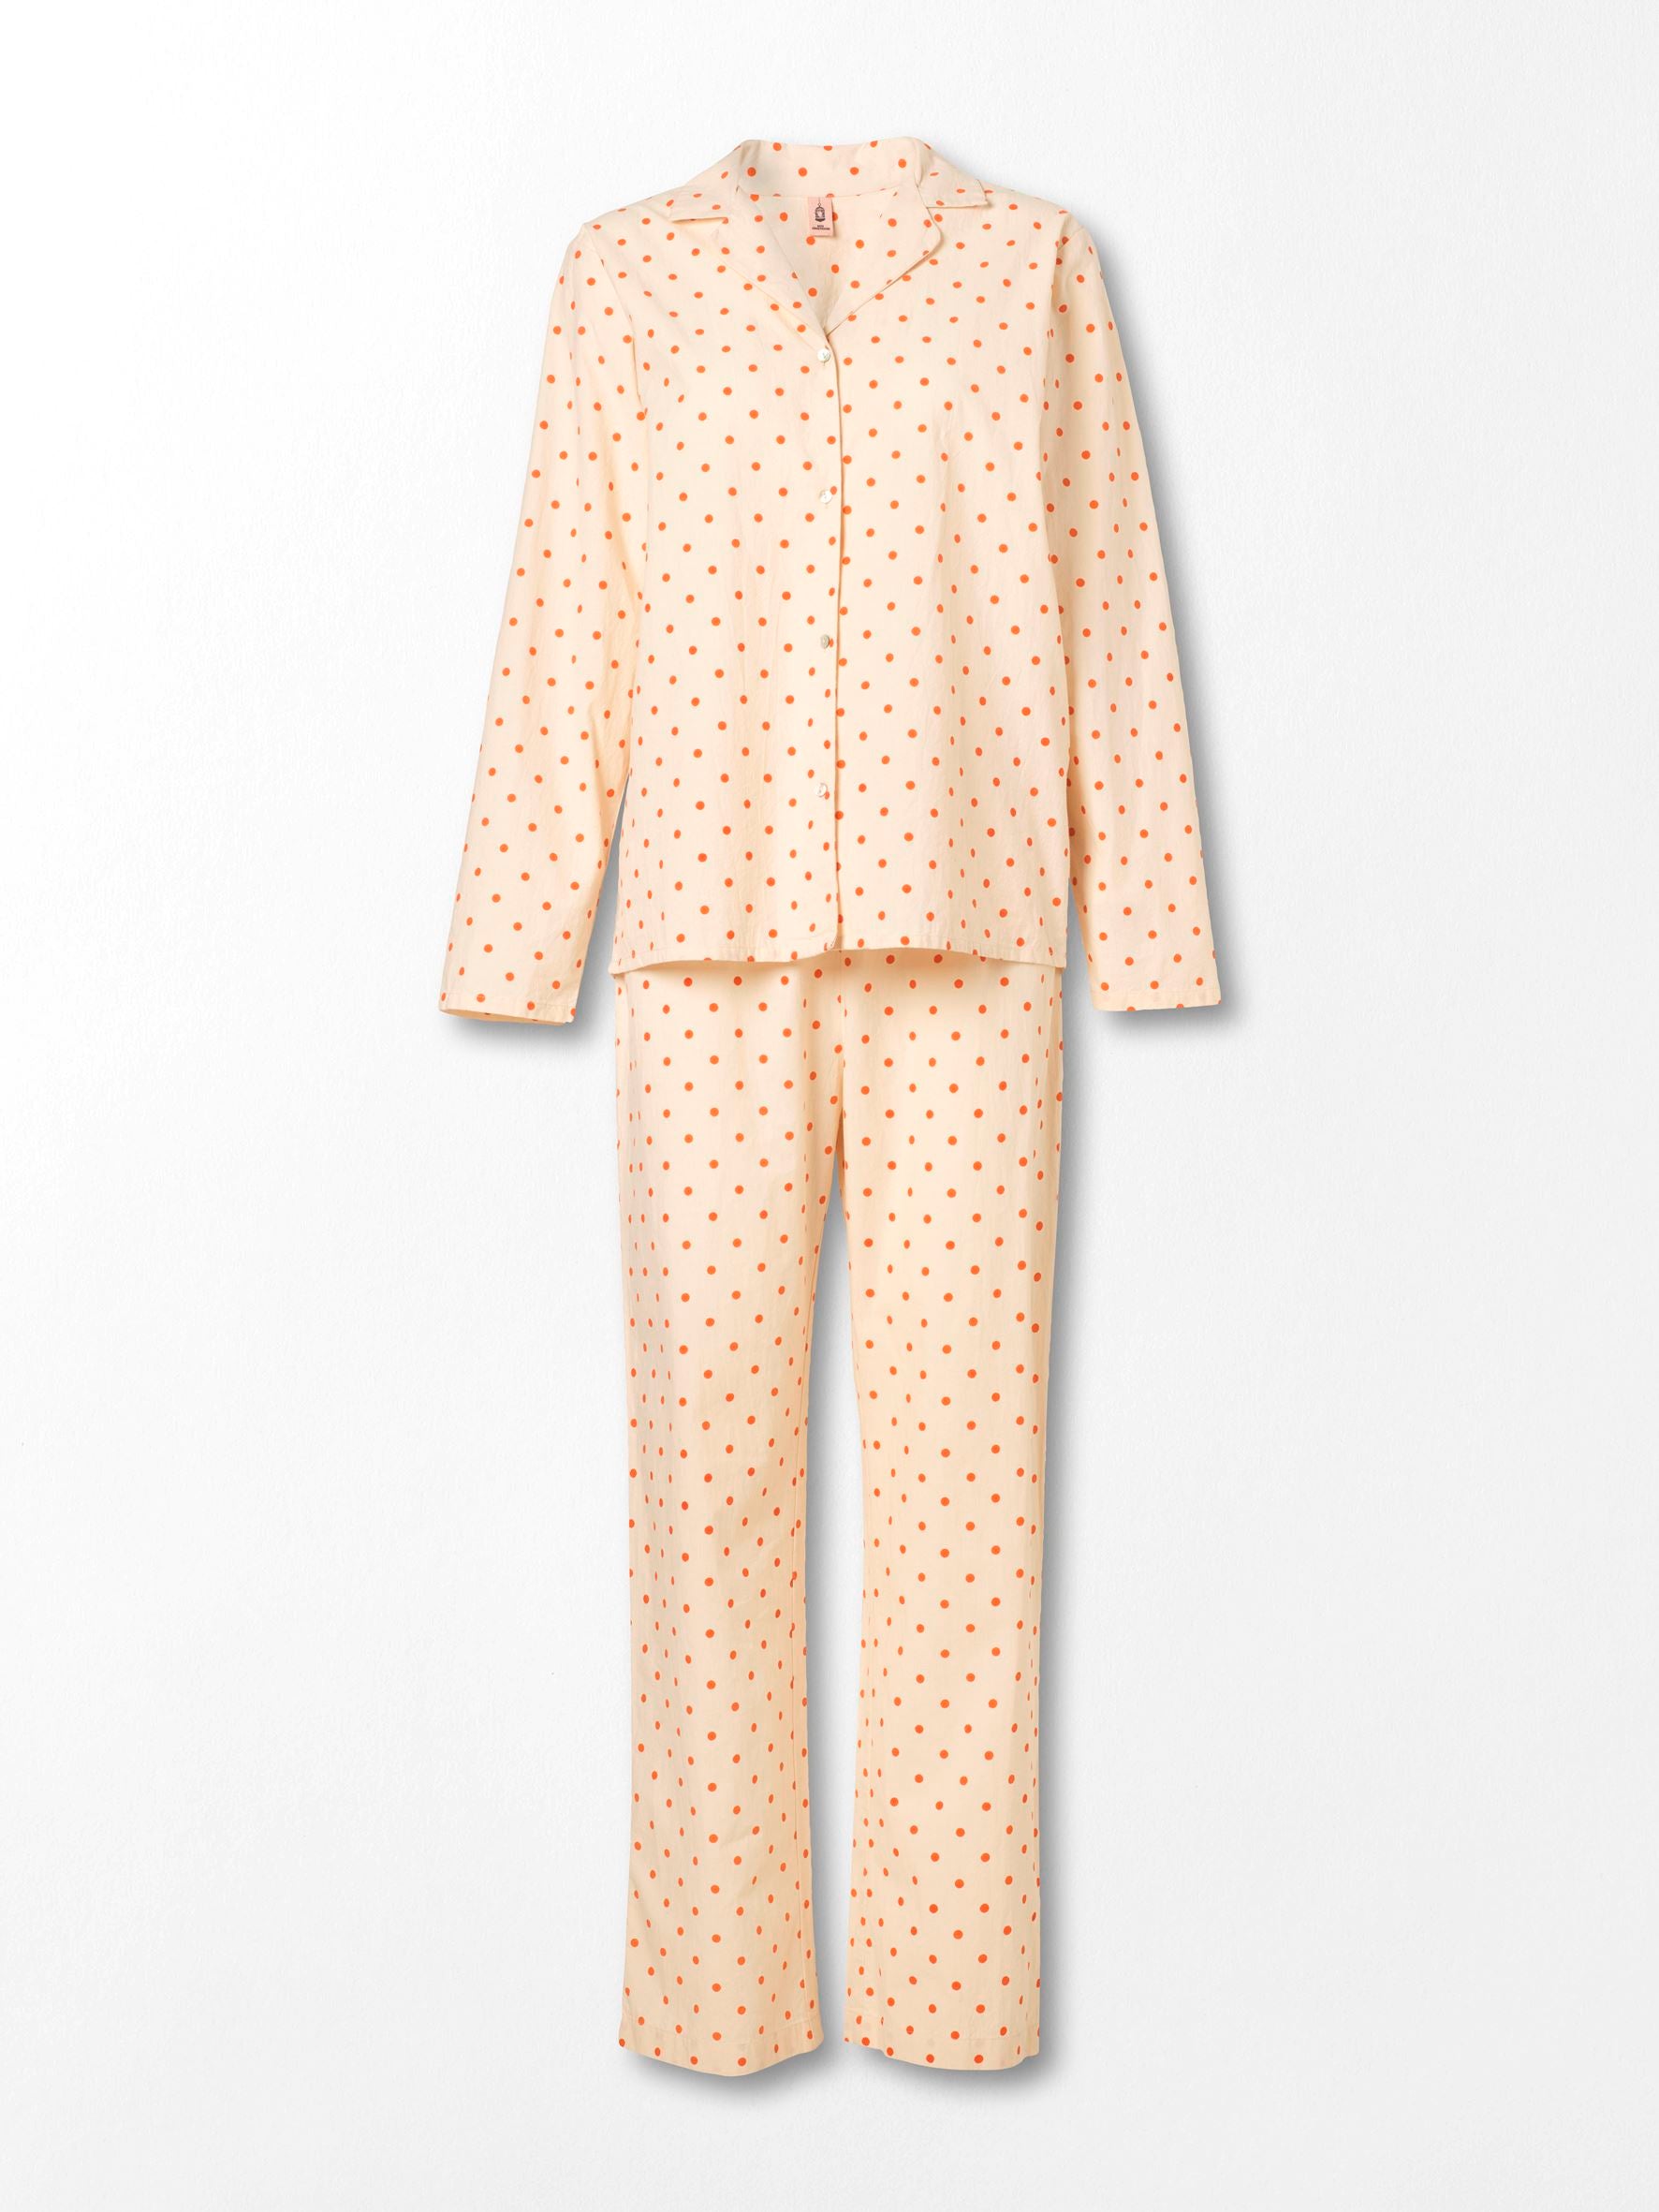 Dot Pyjamas Set - Orange Clothing   BeckSöndergaard.no